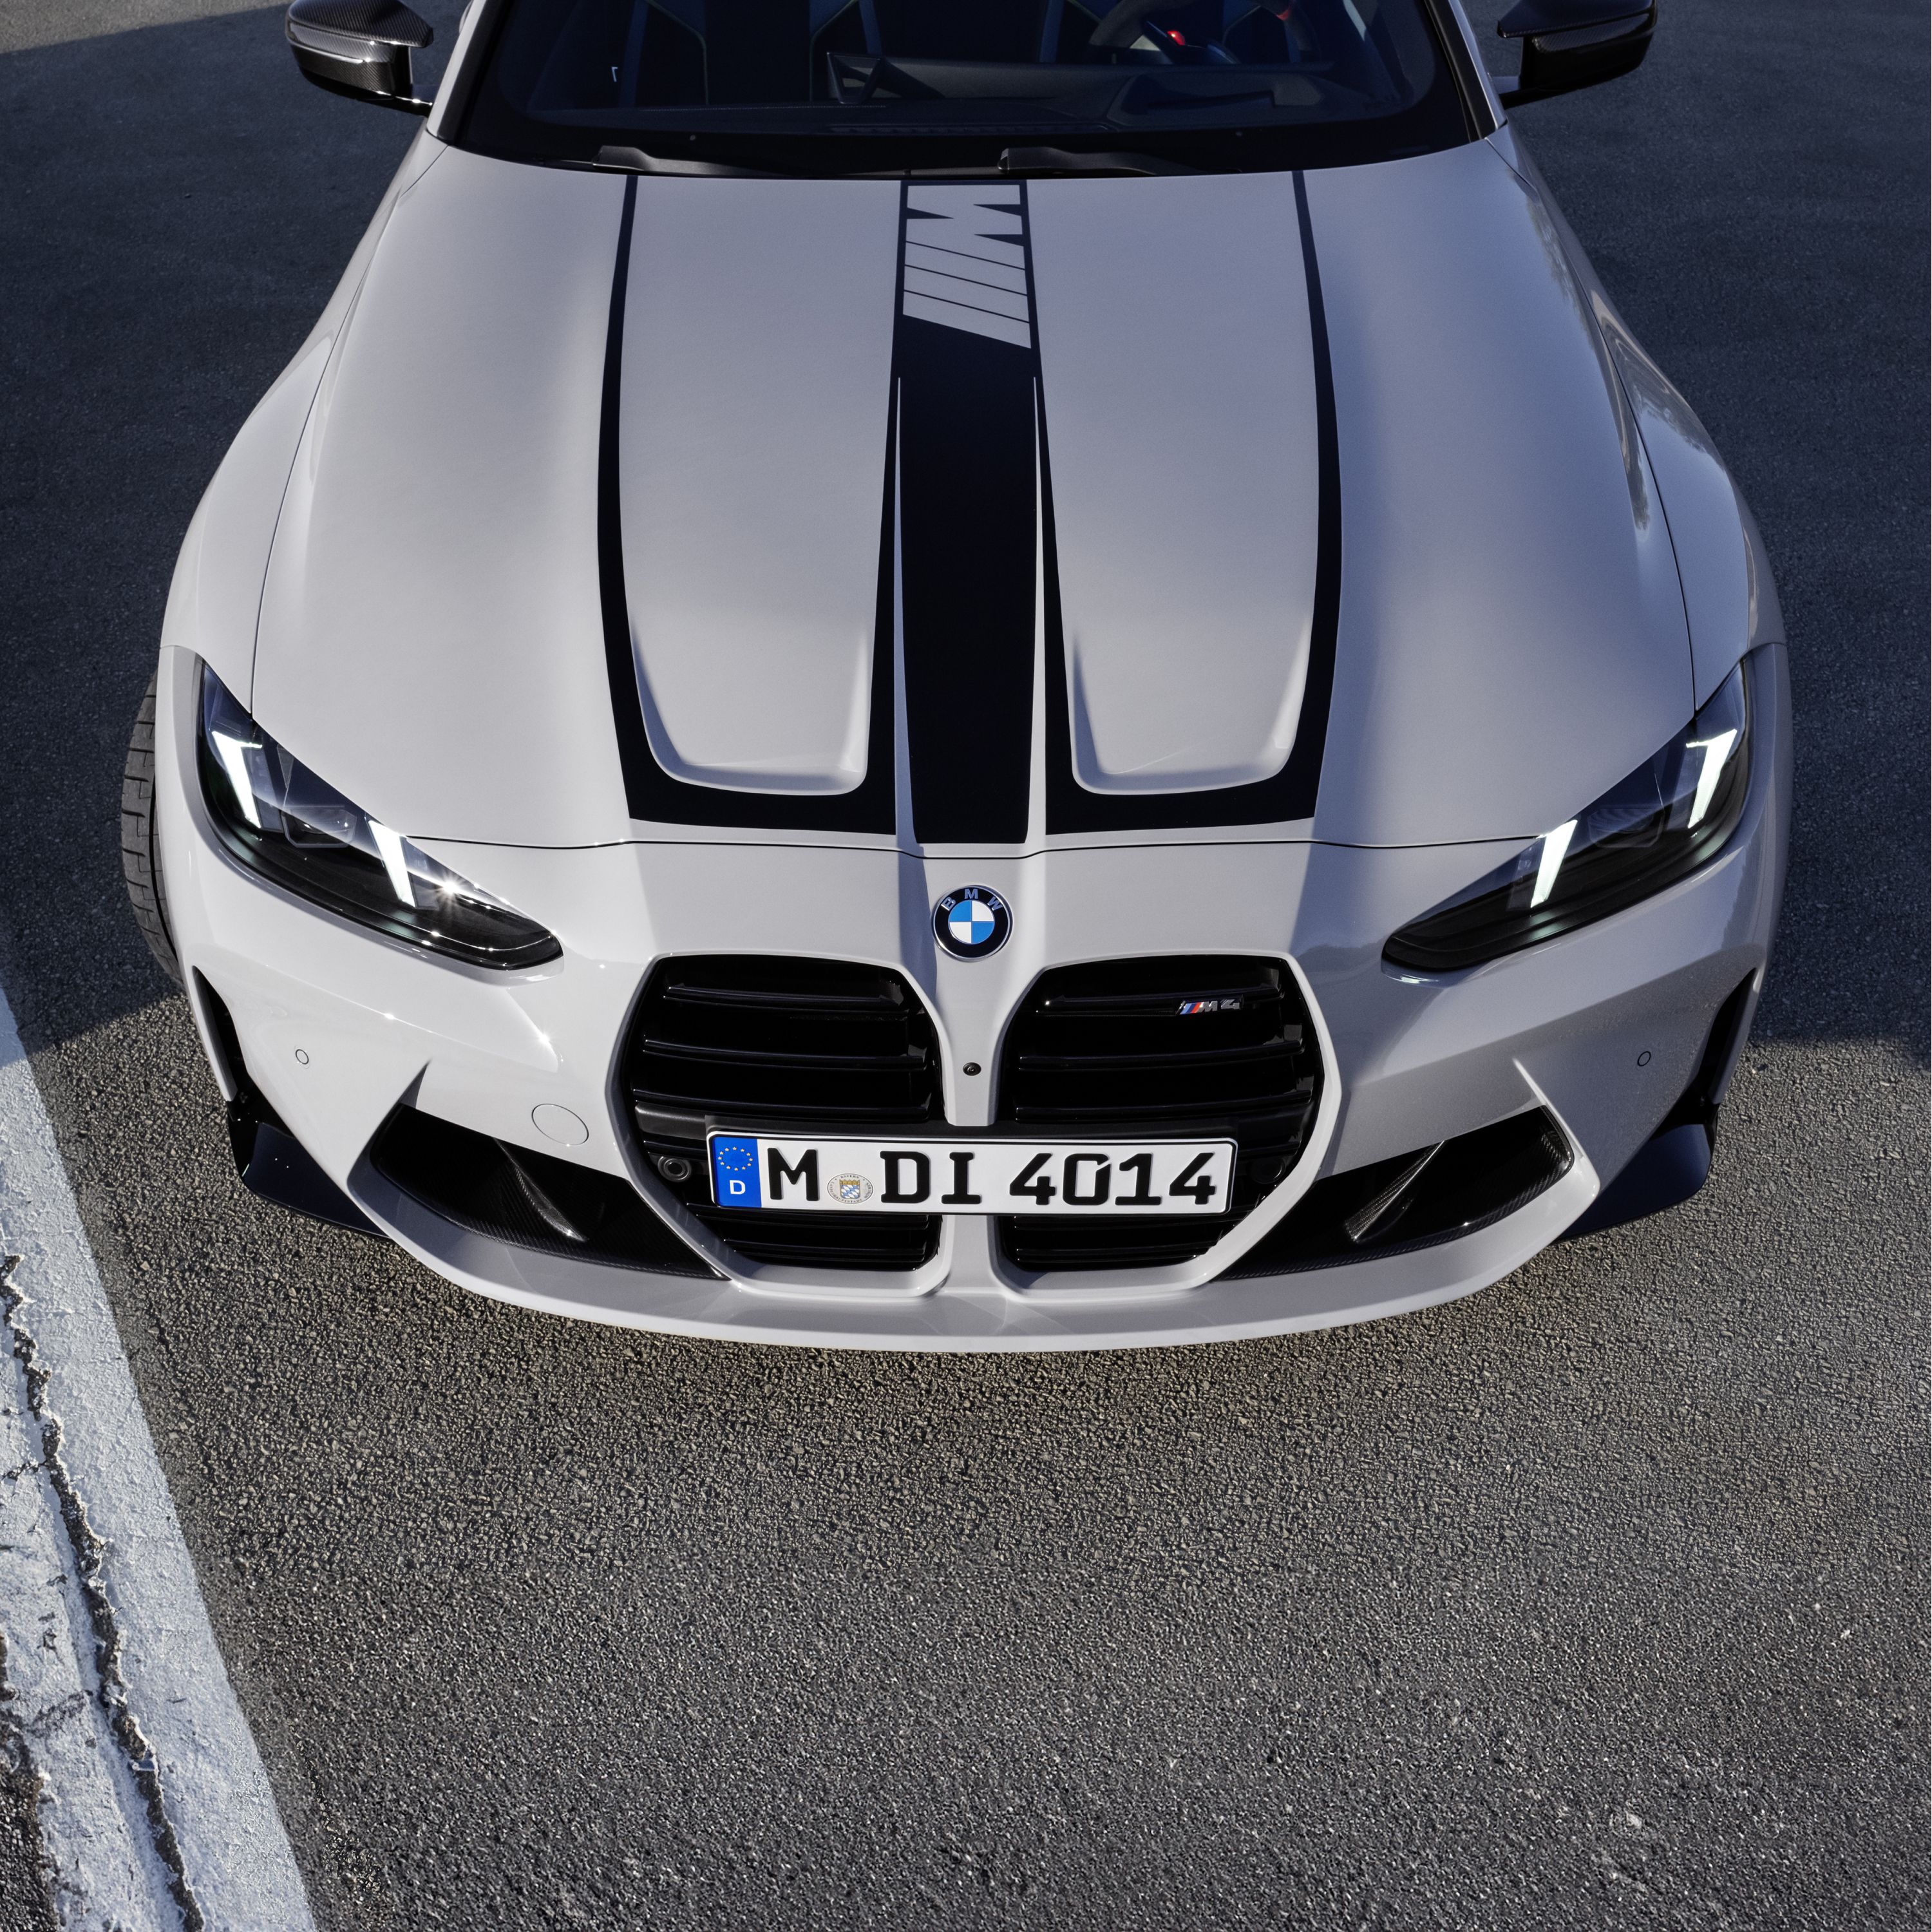 Modelos M do BMW Série 4 Coupé, financiamento e leasing